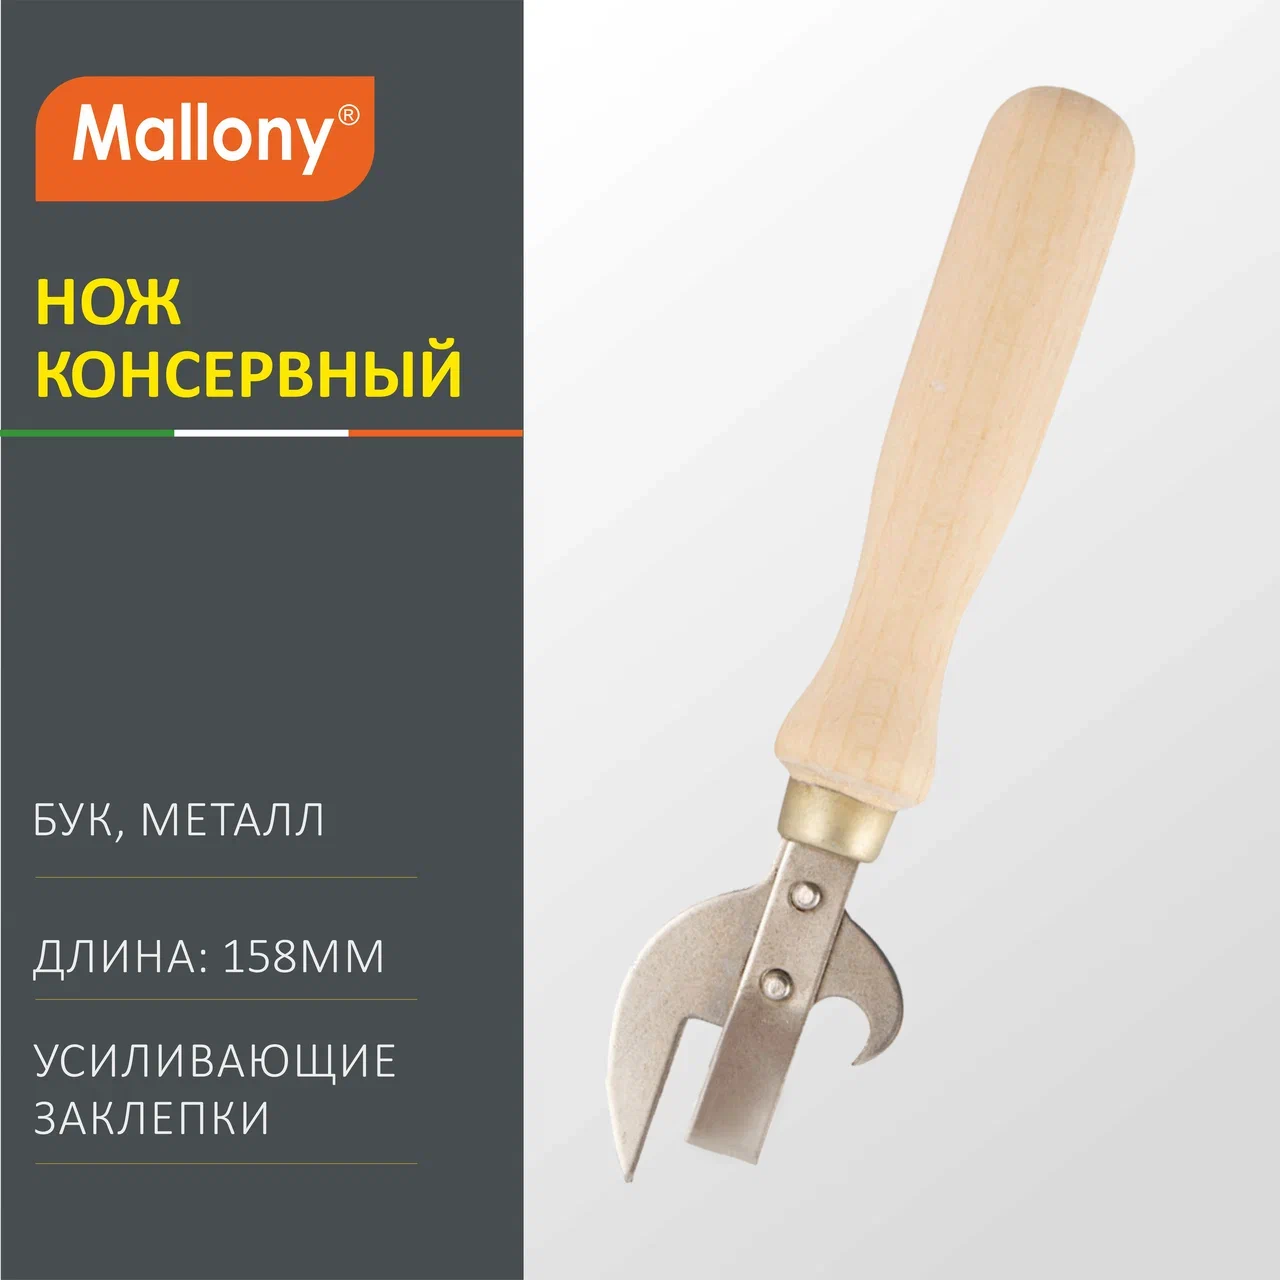 Нож Mallony консервный, 158 мм, 1 шт.